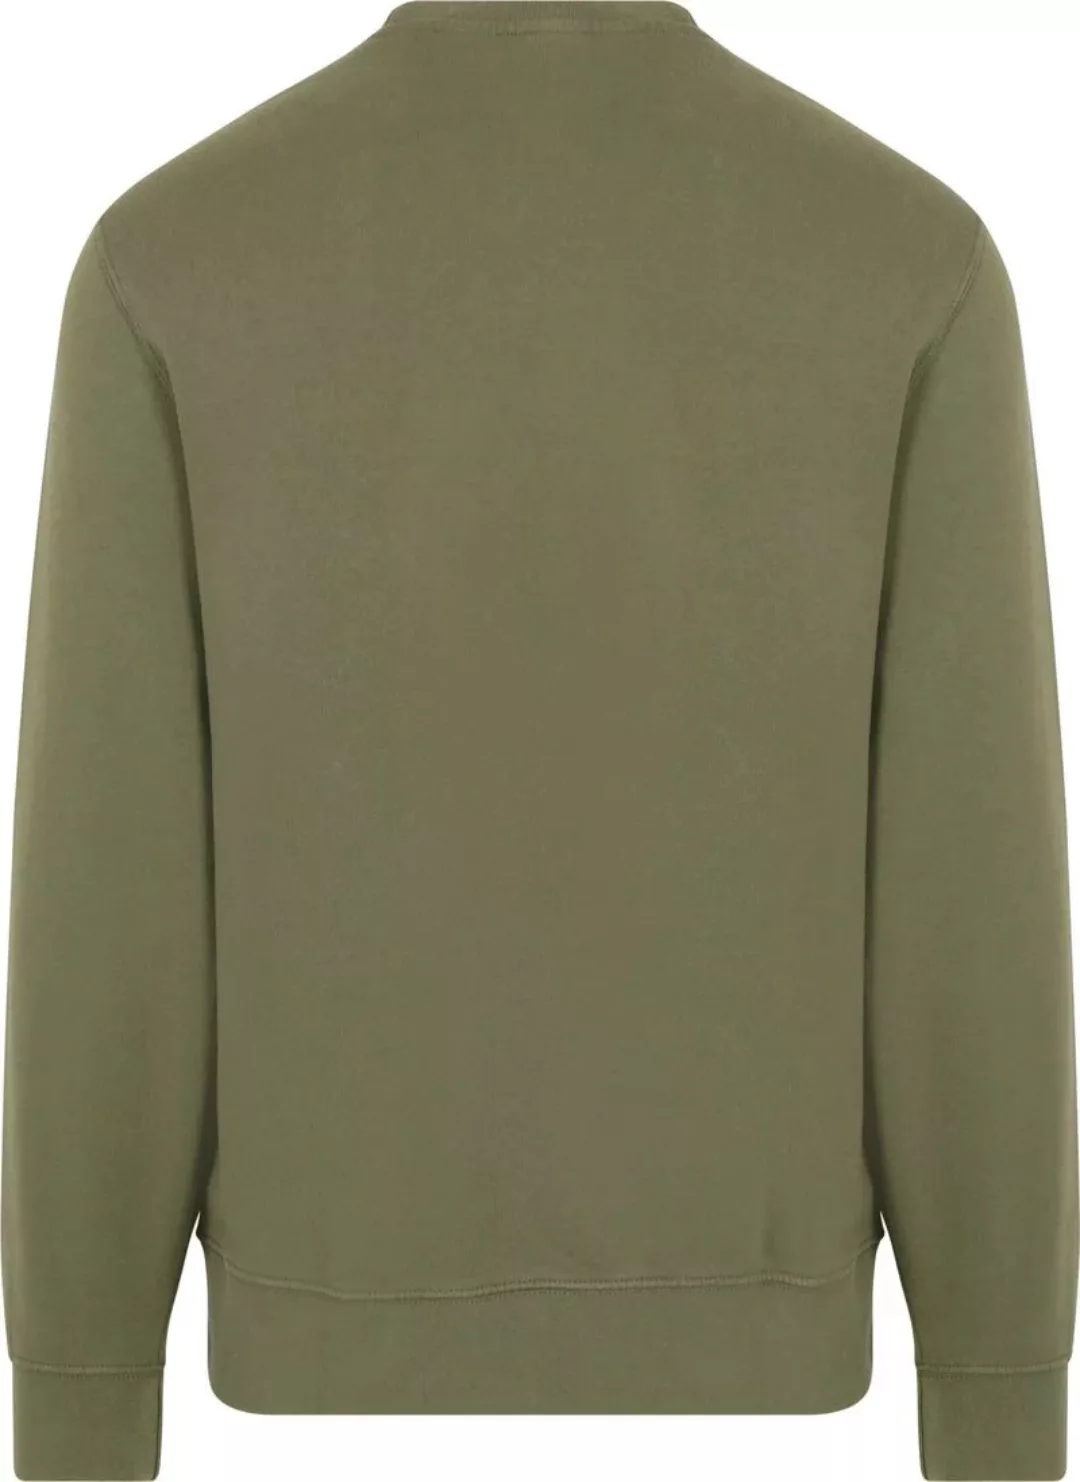 Levi's Sweater Logo Olivgrün - Größe XXL günstig online kaufen